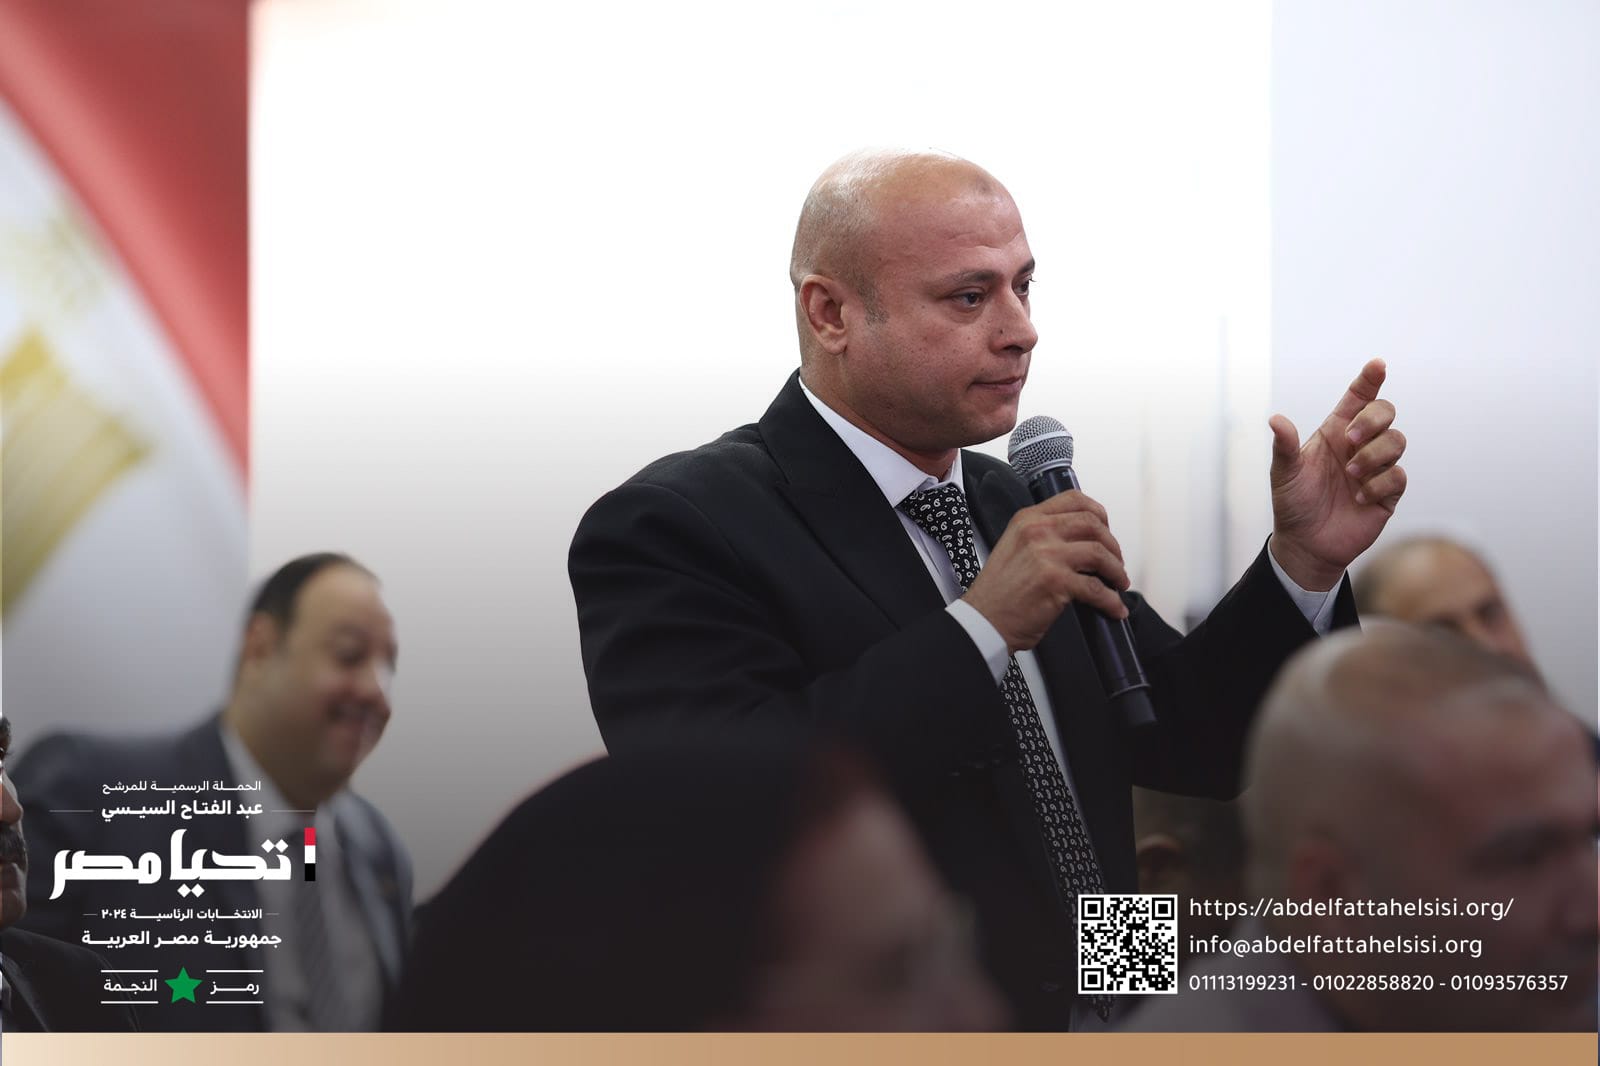 الحملة الرسمية للمرشح الرئاسى عبد الفتاح السيسي تستقبل وفداً من النقابة العامة لأعمال النقل الجوي   (5)